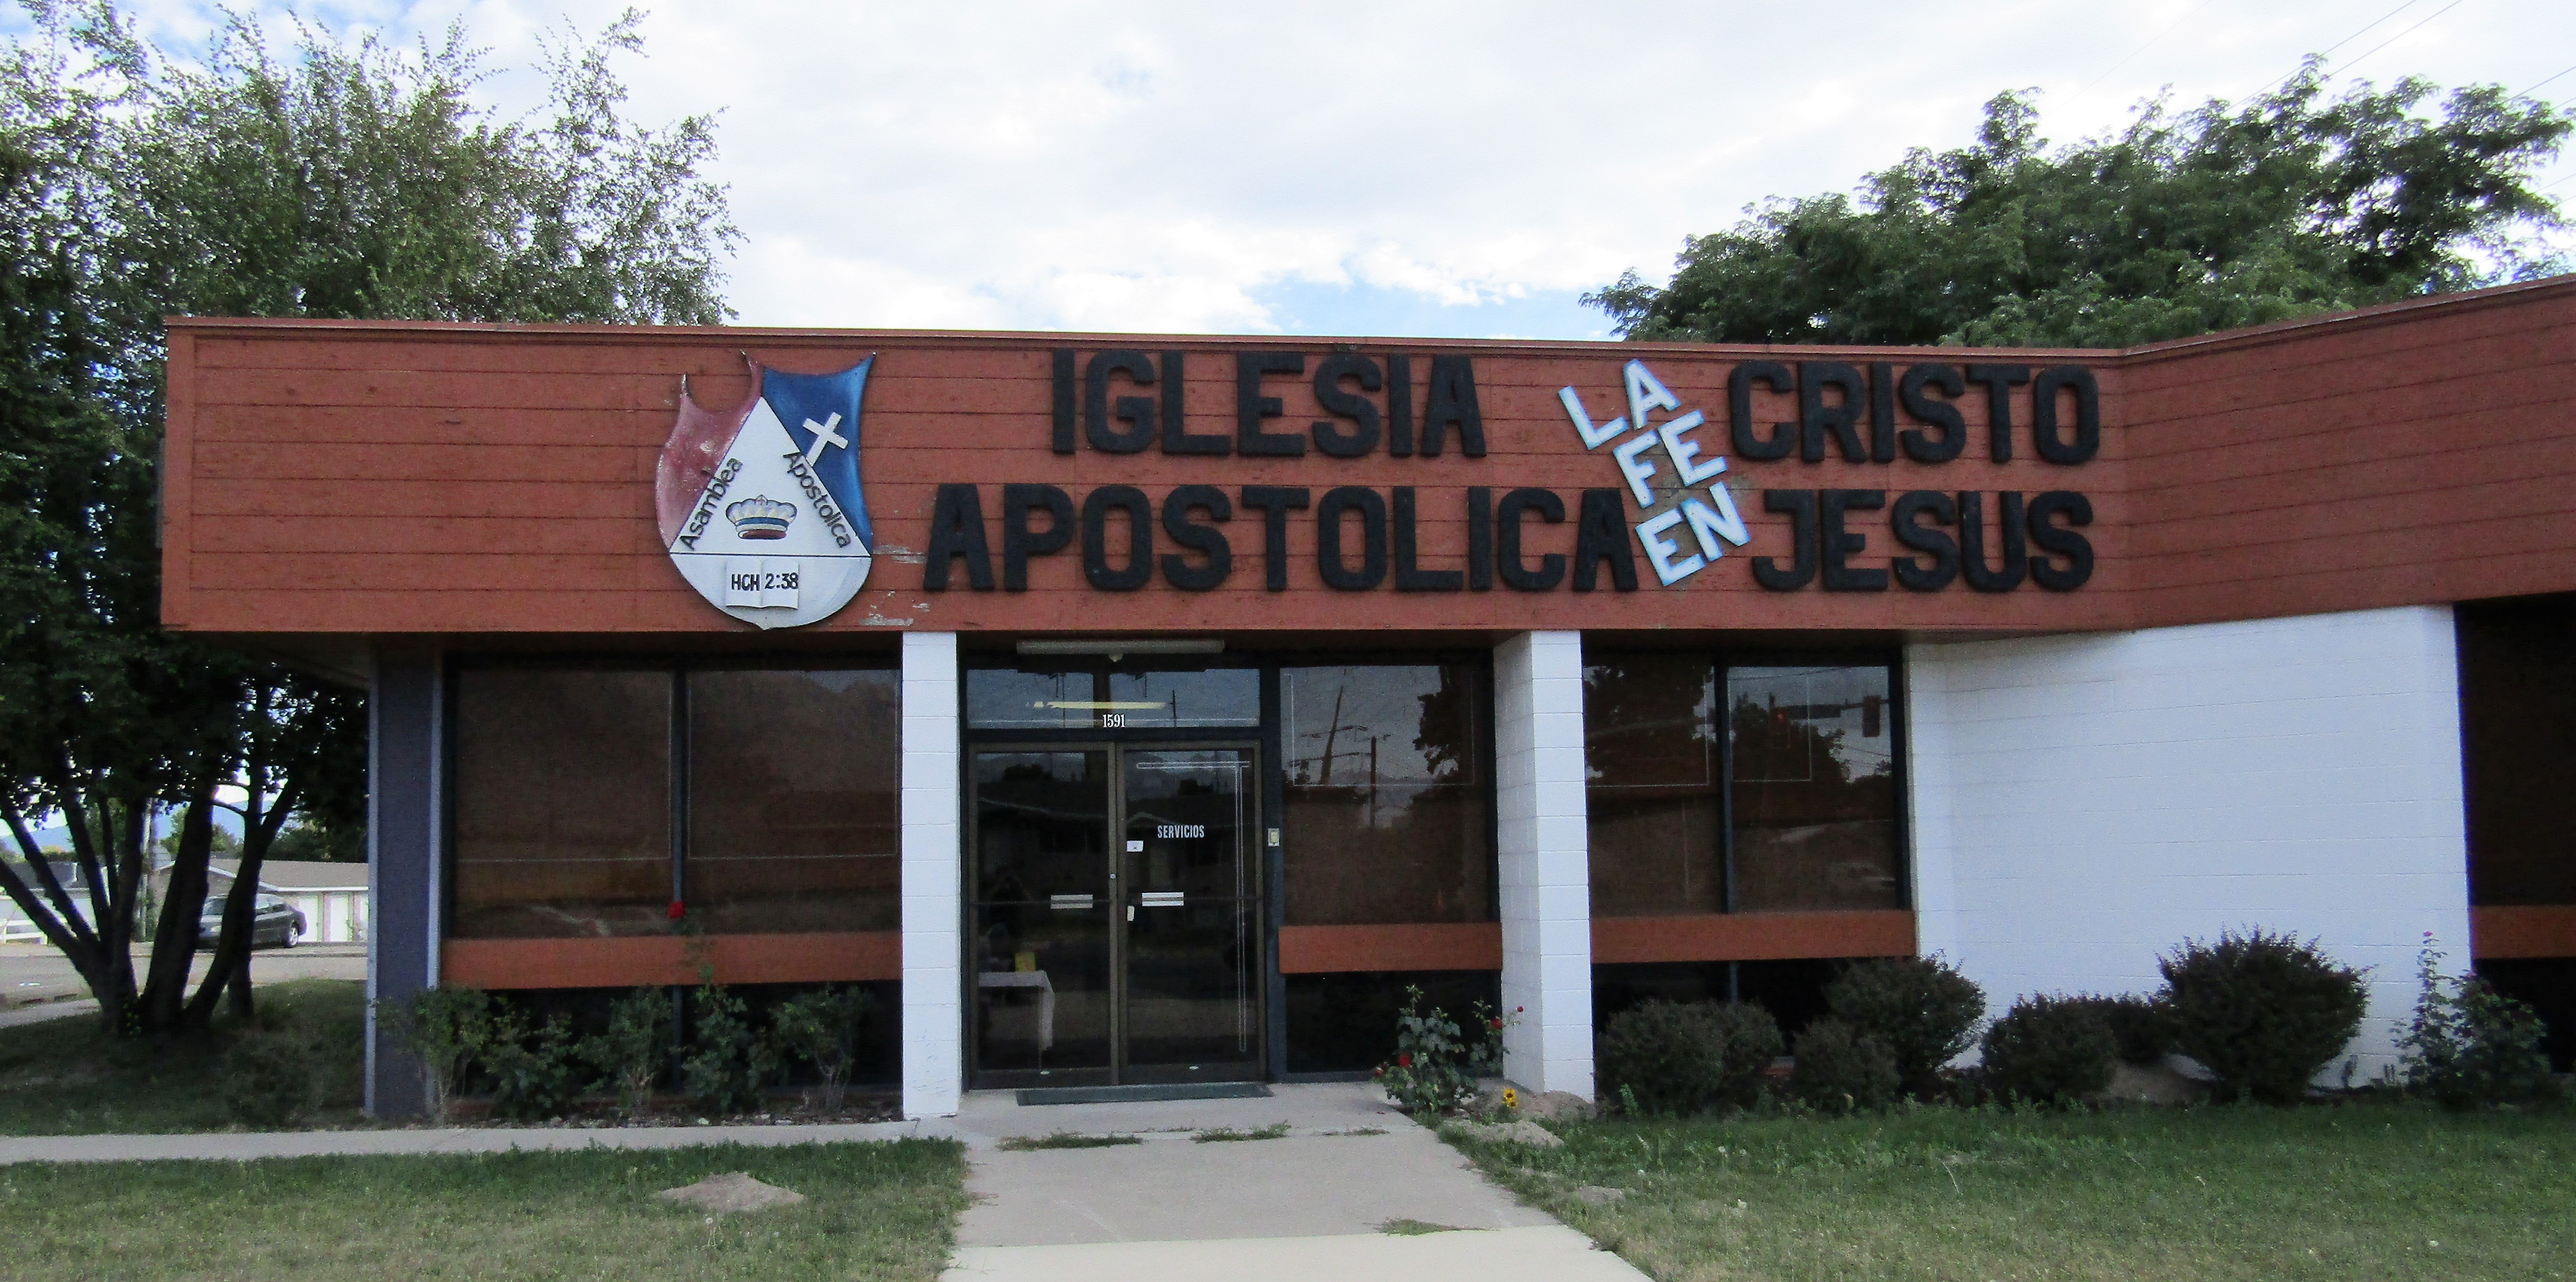 Archivo:Iglesia Apostolica De La Fe En Cristo Jesus (26832196259).jpg -  Wikipedia, la enciclopedia libre